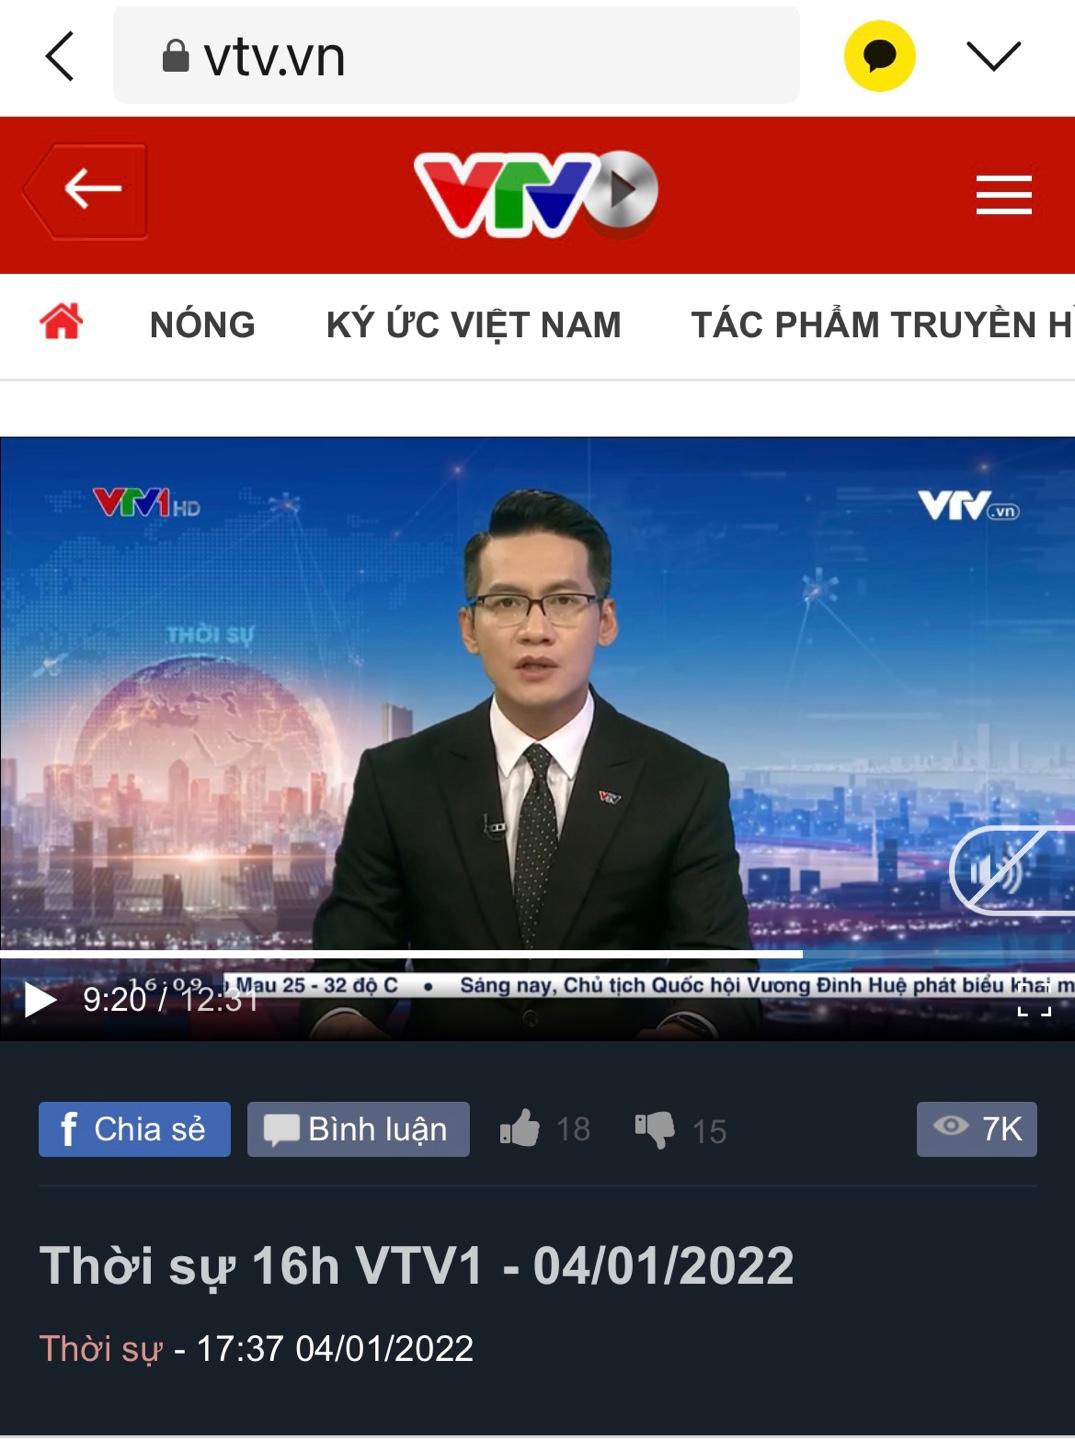 건양대 합격 KOICA사업, 베트남 국영방송 VTV에 소개돼 화제